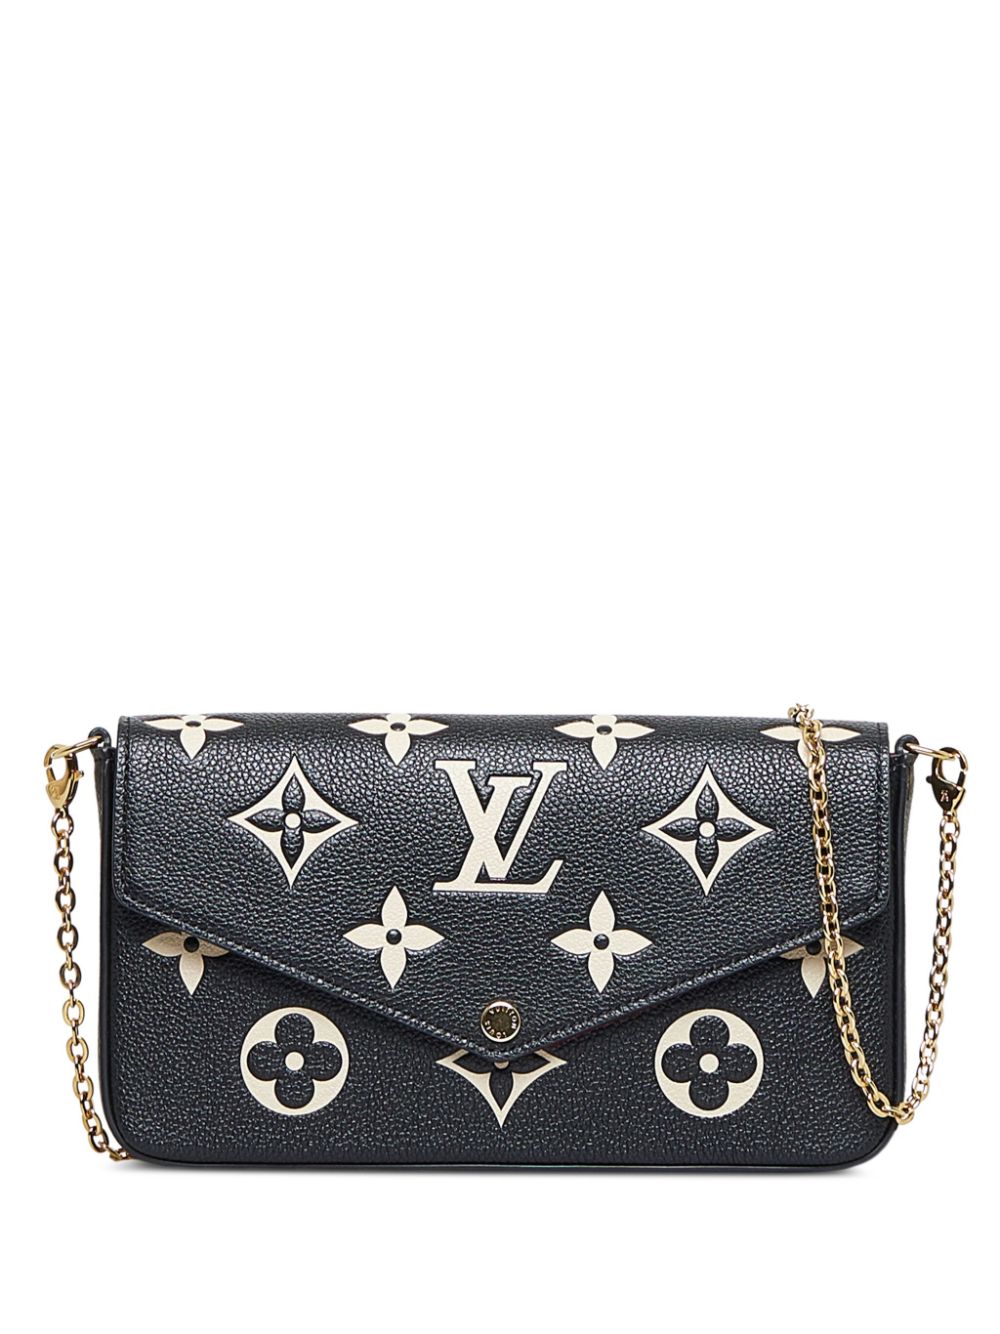 Louis Vuitton Pochette Felicie Shoulder Bags for Women